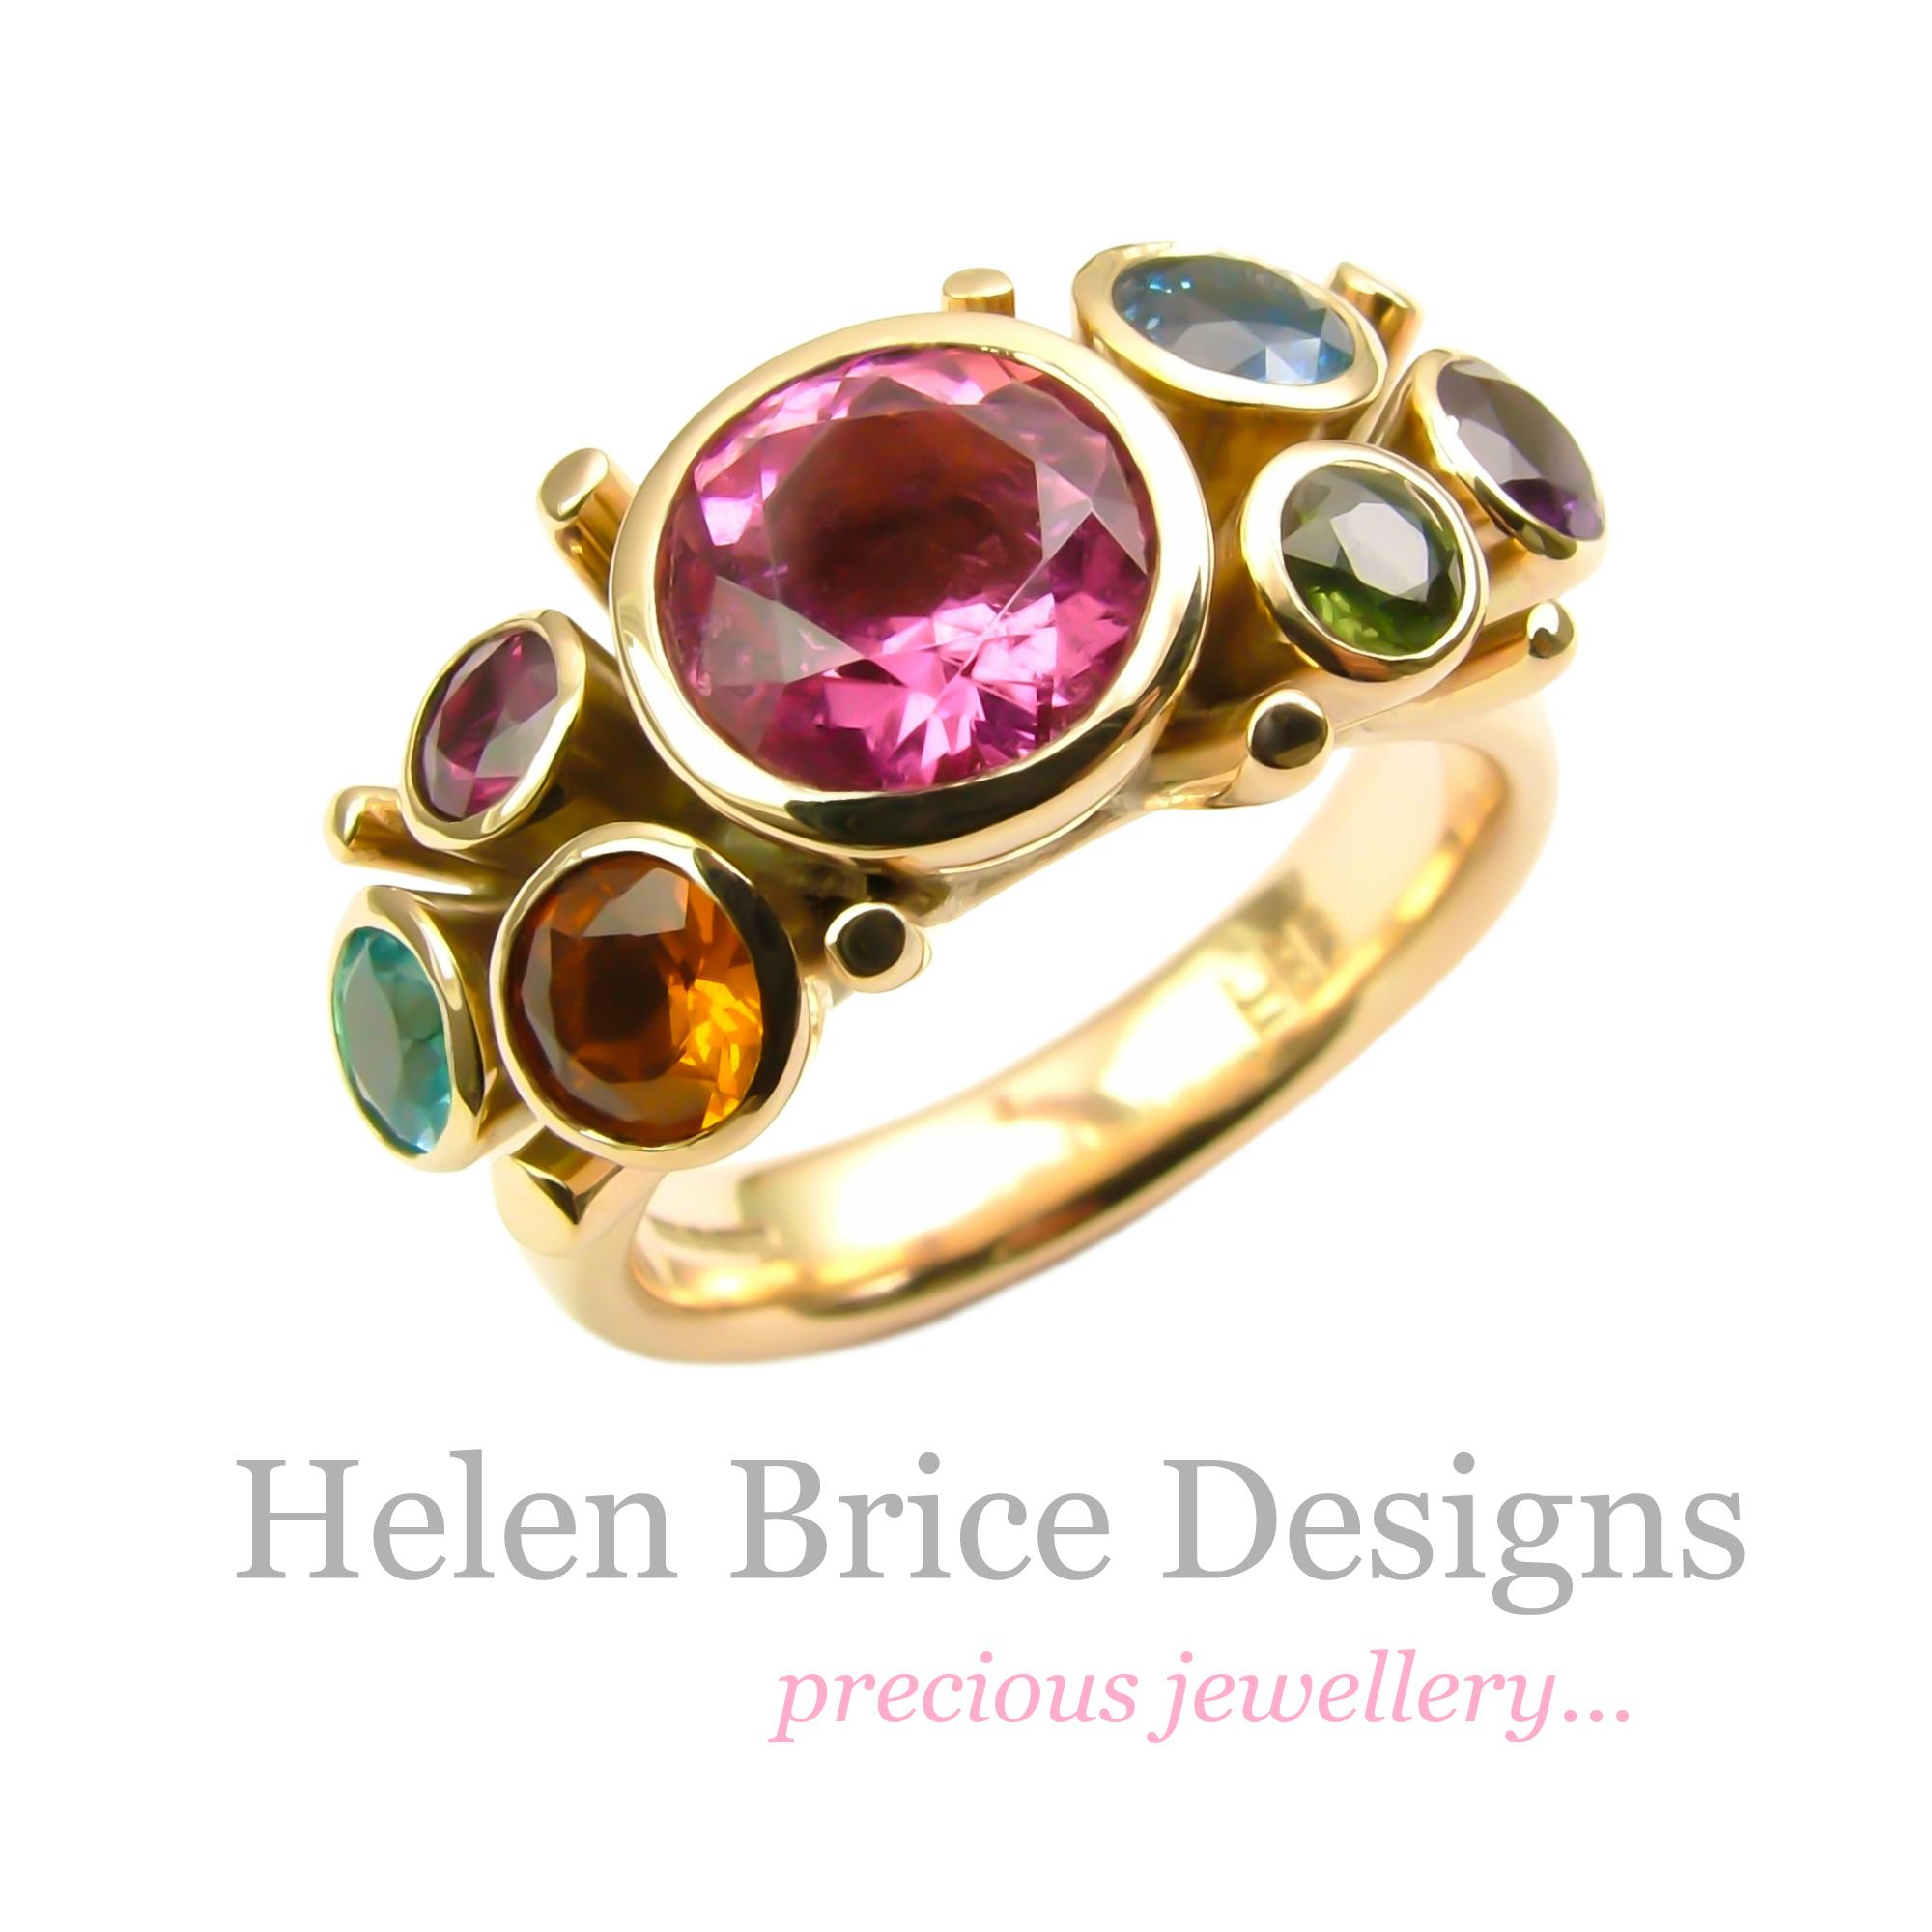 Helen Brice Designs